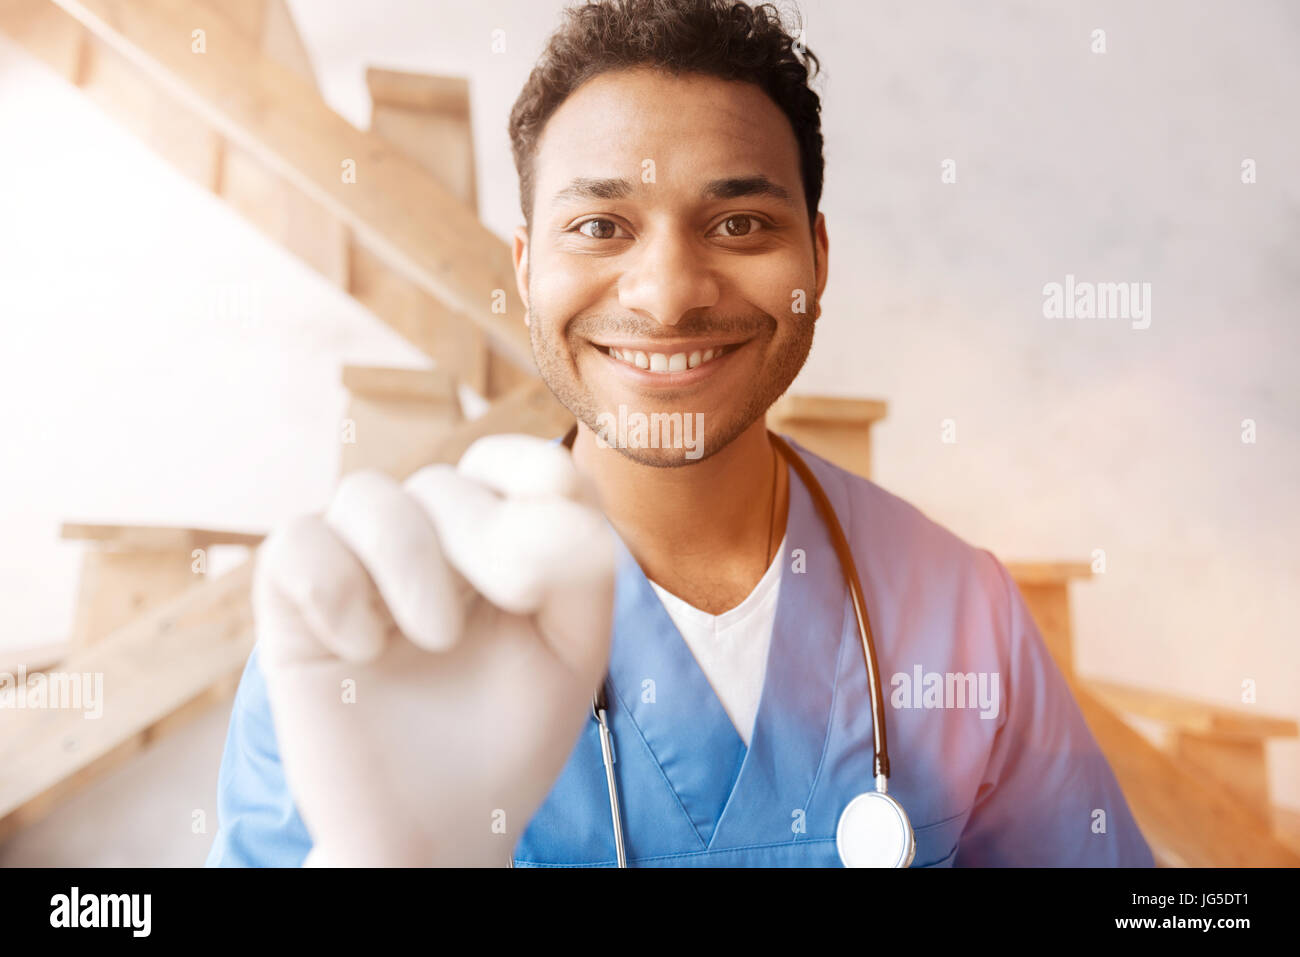 Lächelnder Mann in medizinischen Uniform tun checkup Stockfoto